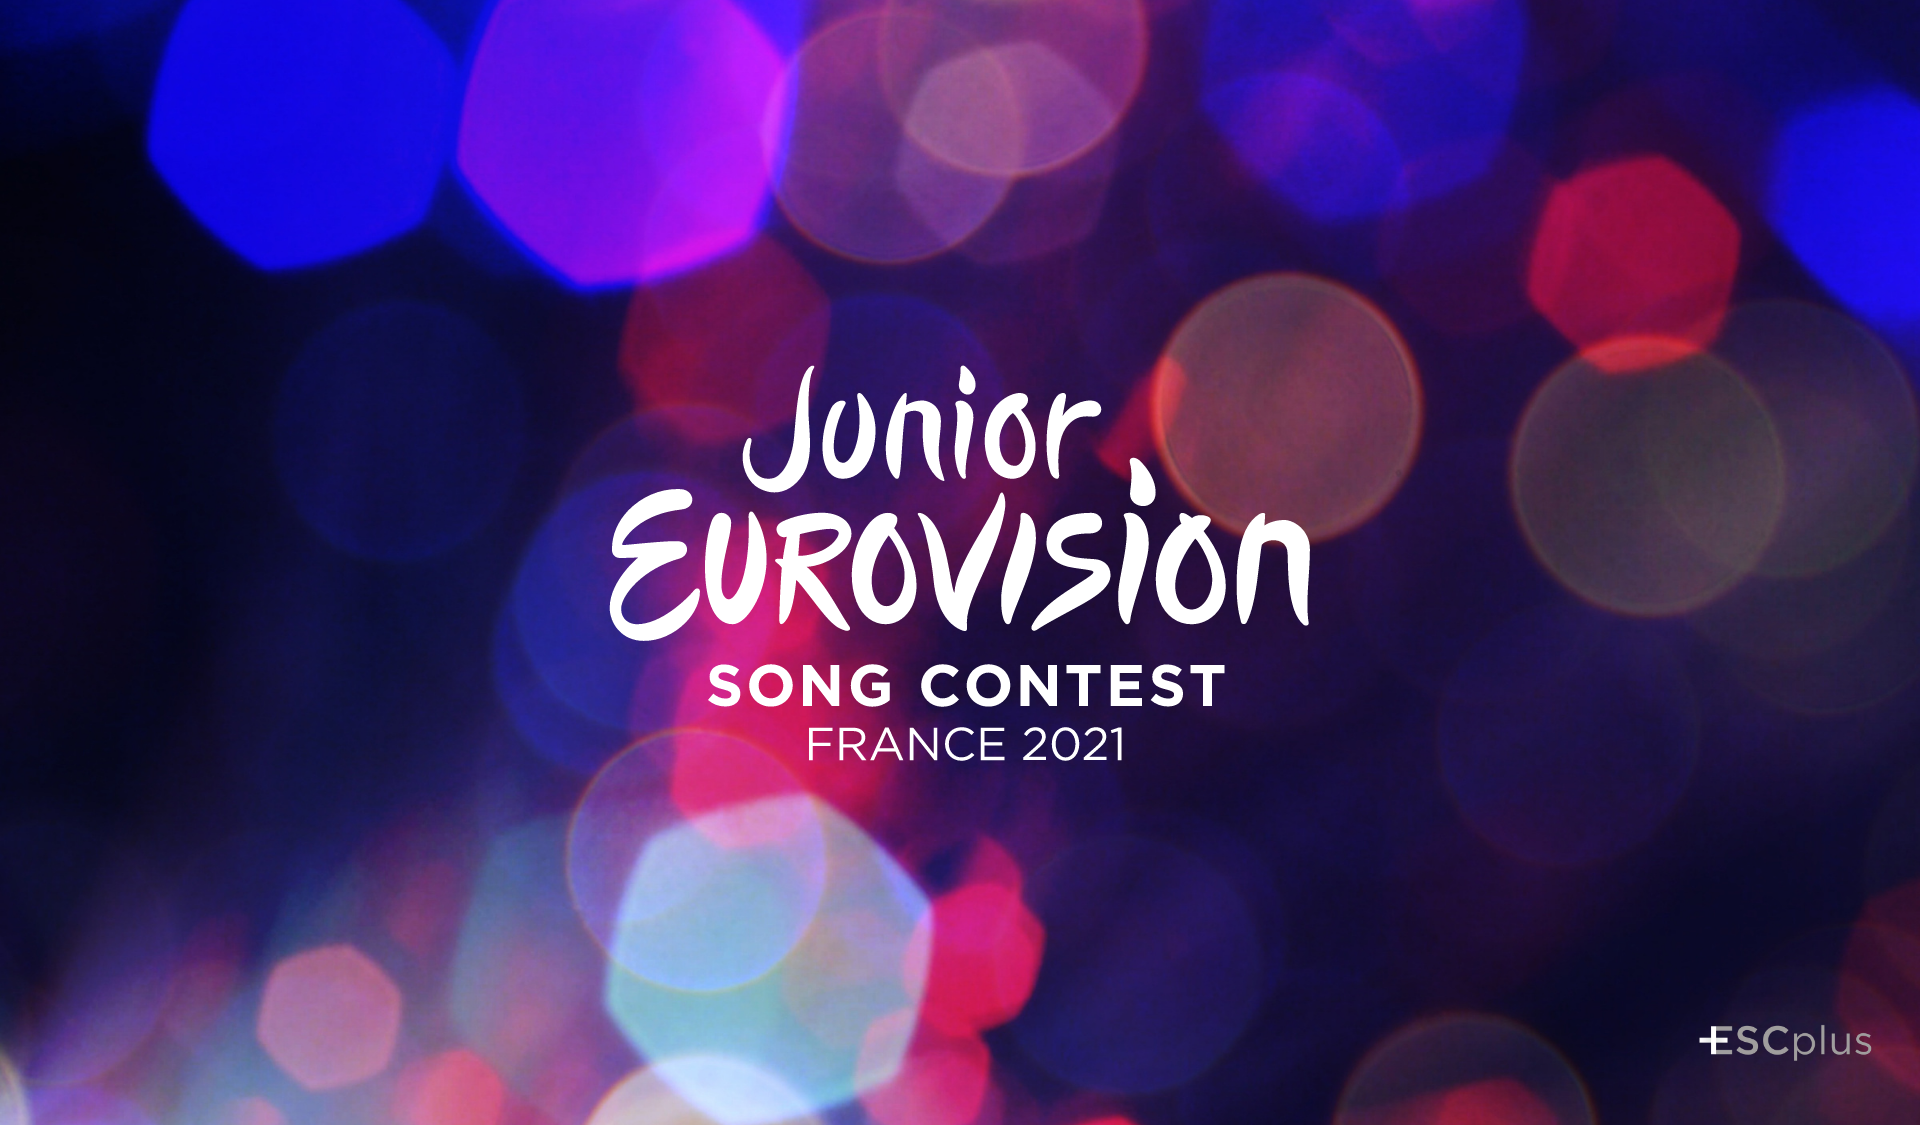 ¡Tenemos fecha para Eurovisión Junior 2021! Francia celebrará el festival el 28 de noviembre